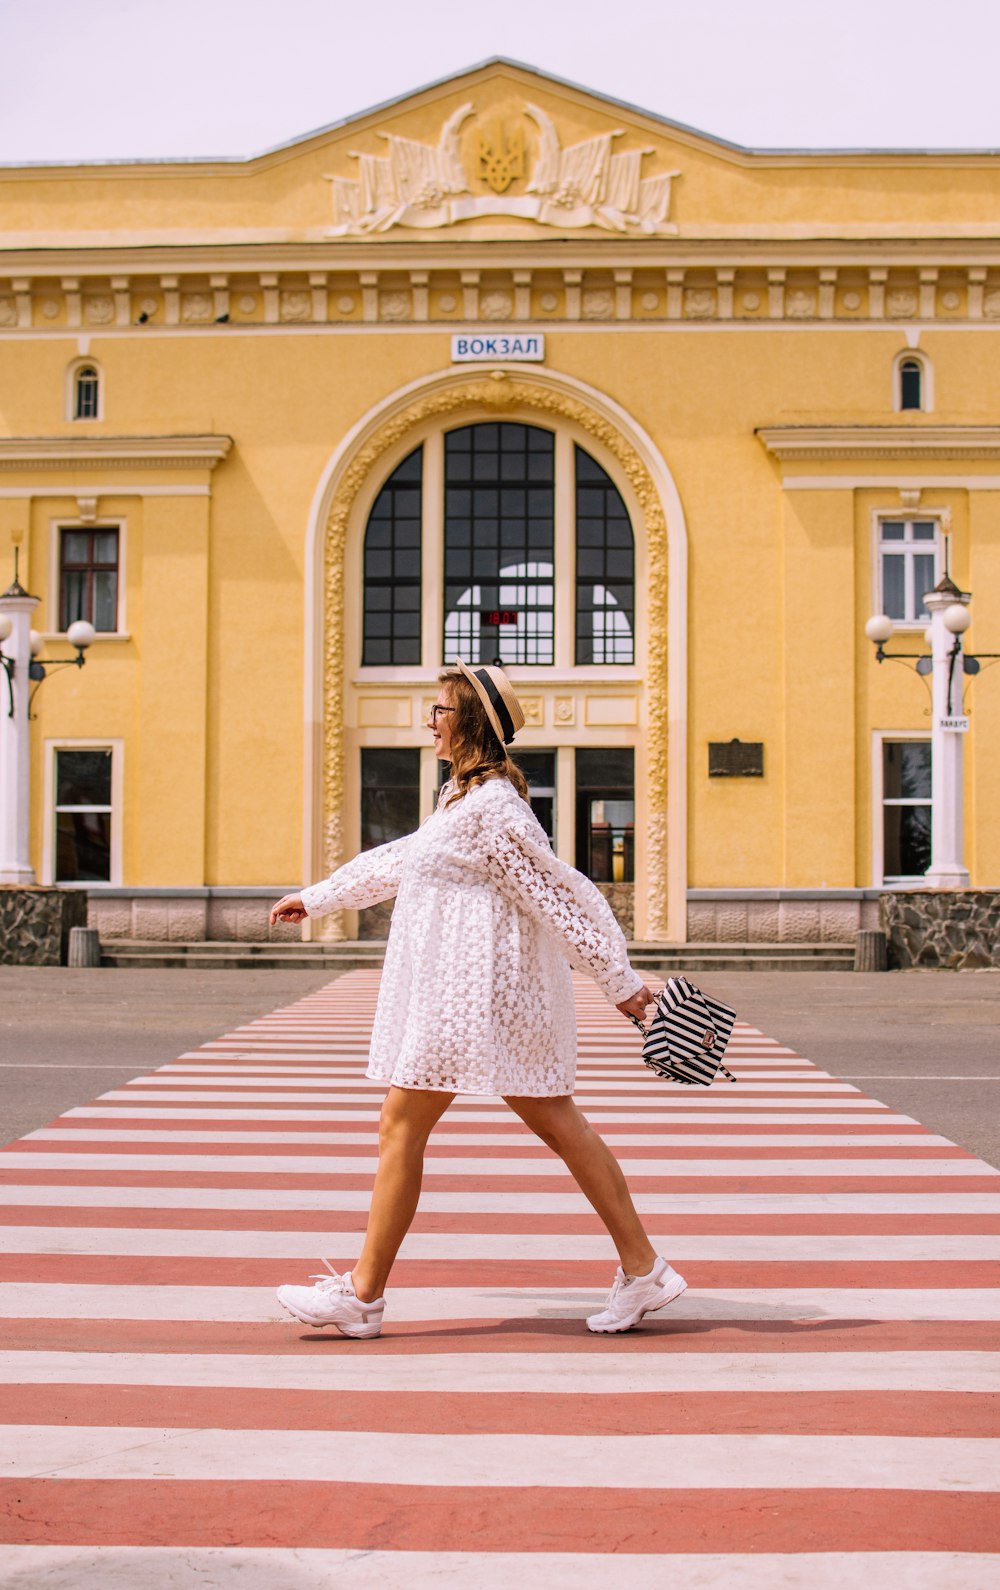 woman in white long sleeve dress walking on pedestrian lane during daytime